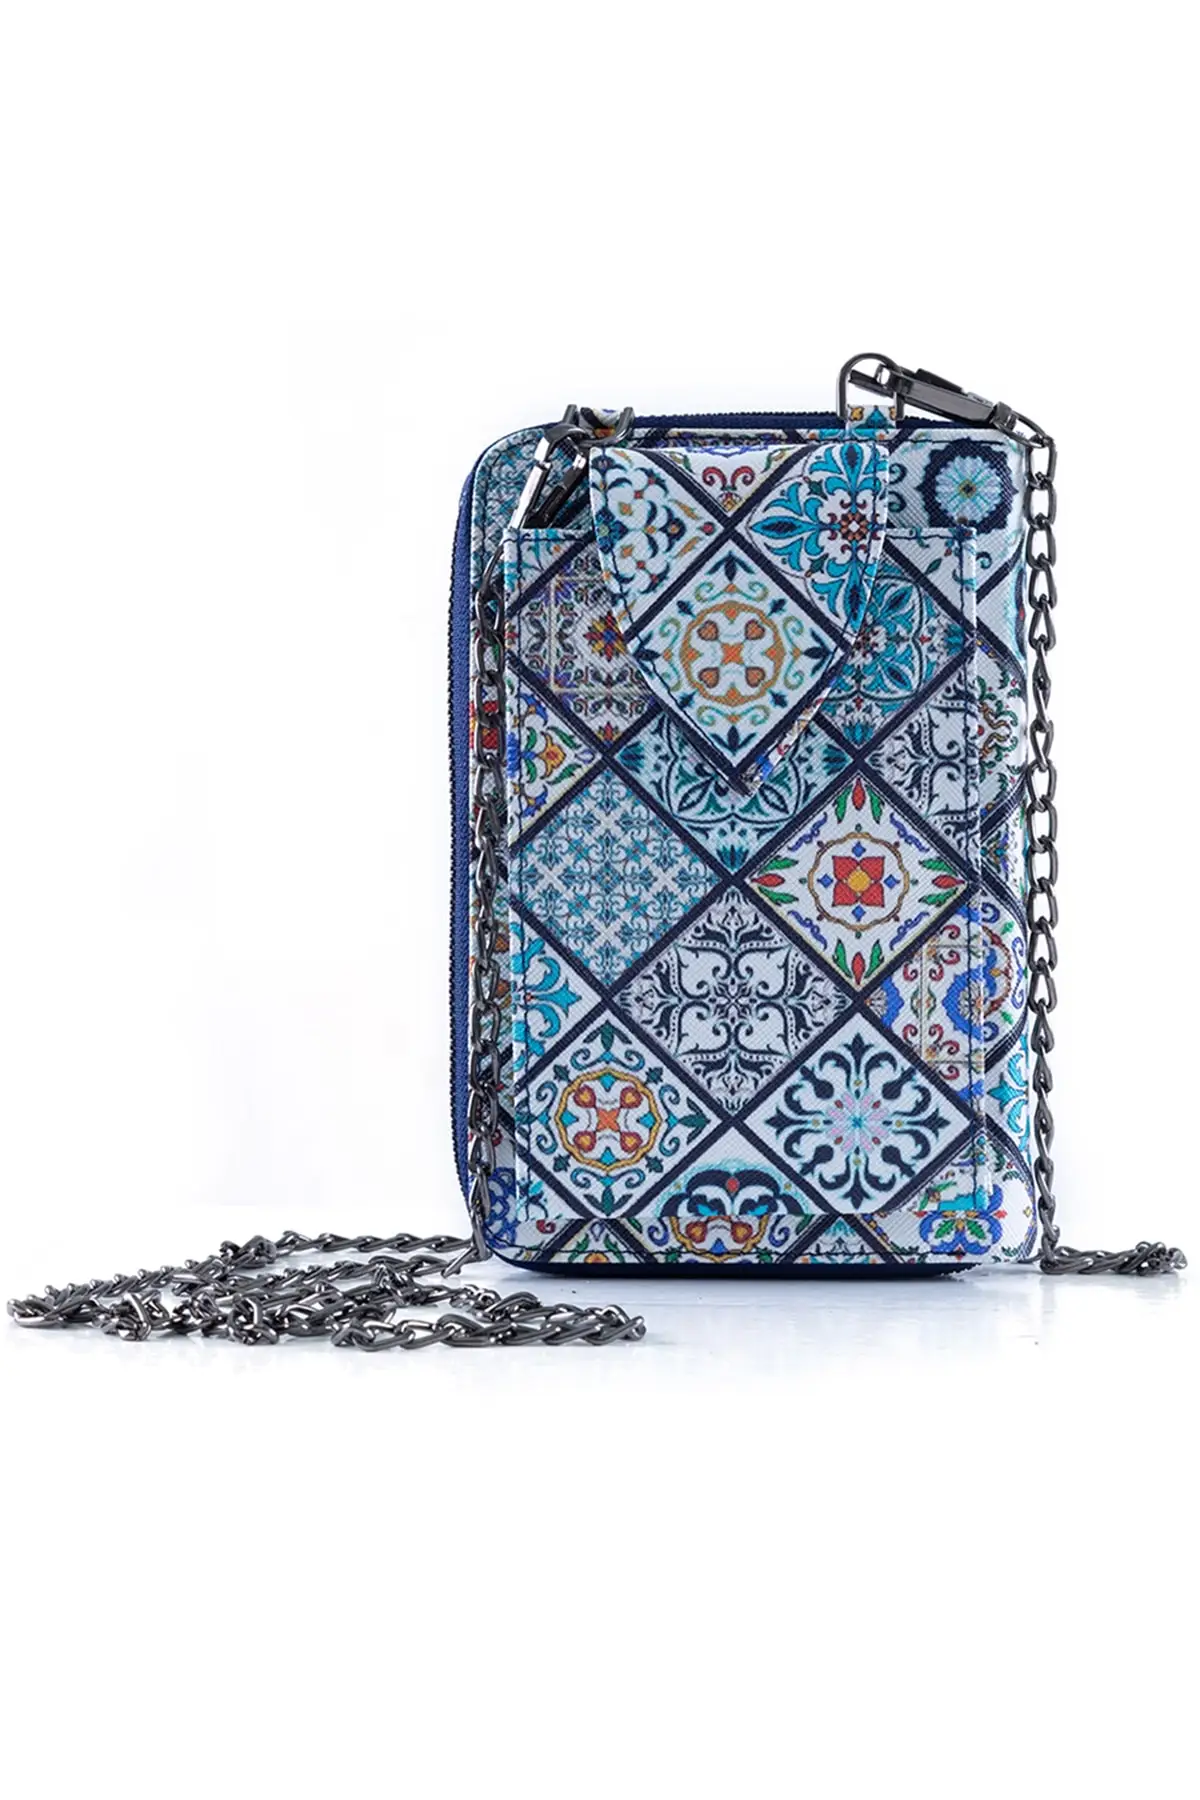 

Стильный женский кошелек с рисунком в виде плитки, регулируемая телефонная сумка, Синий X кредитный чехол для паспорта